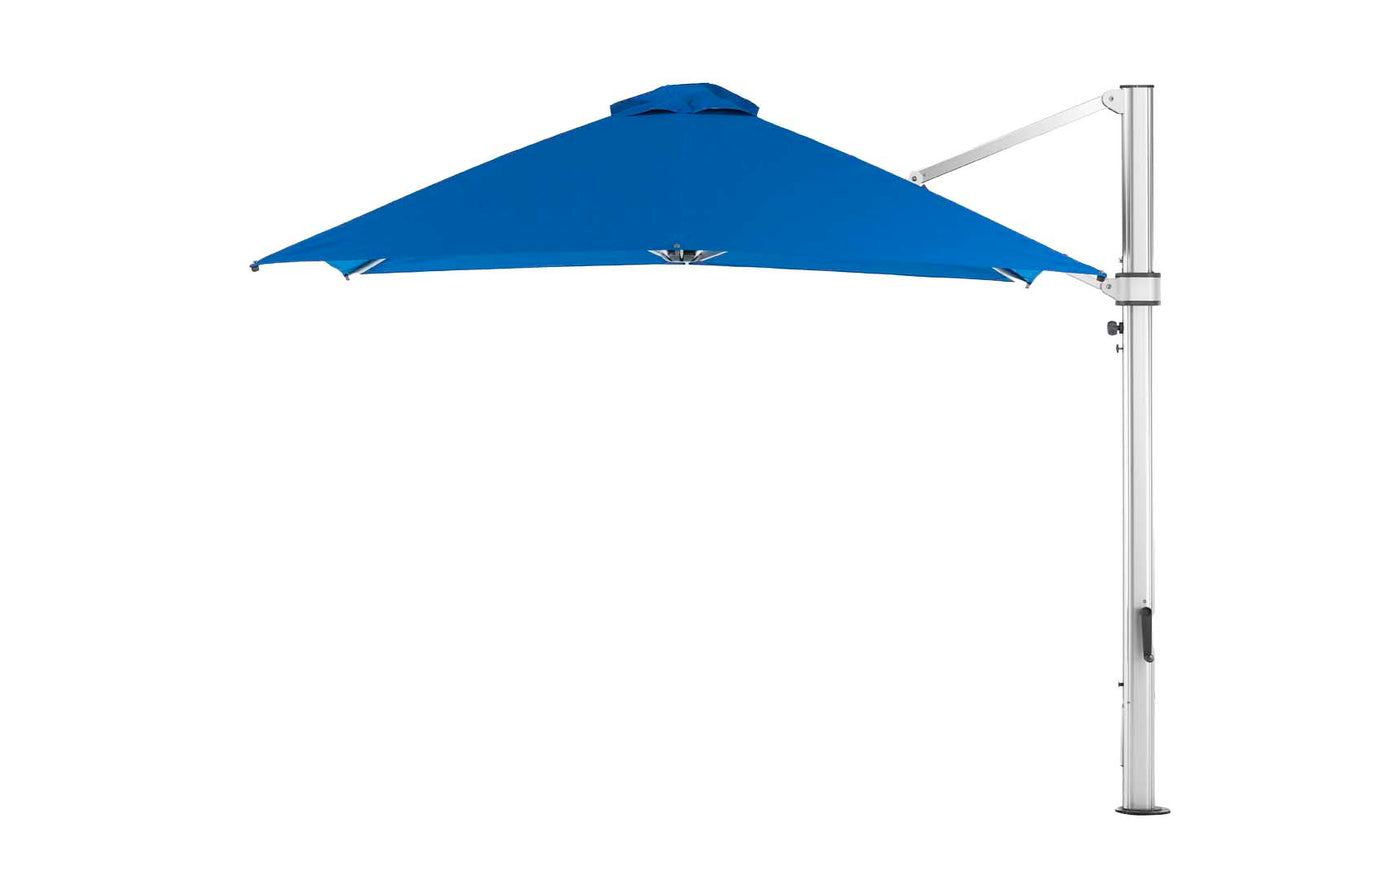 Ultra Cantilever Umbrella - 10' Square